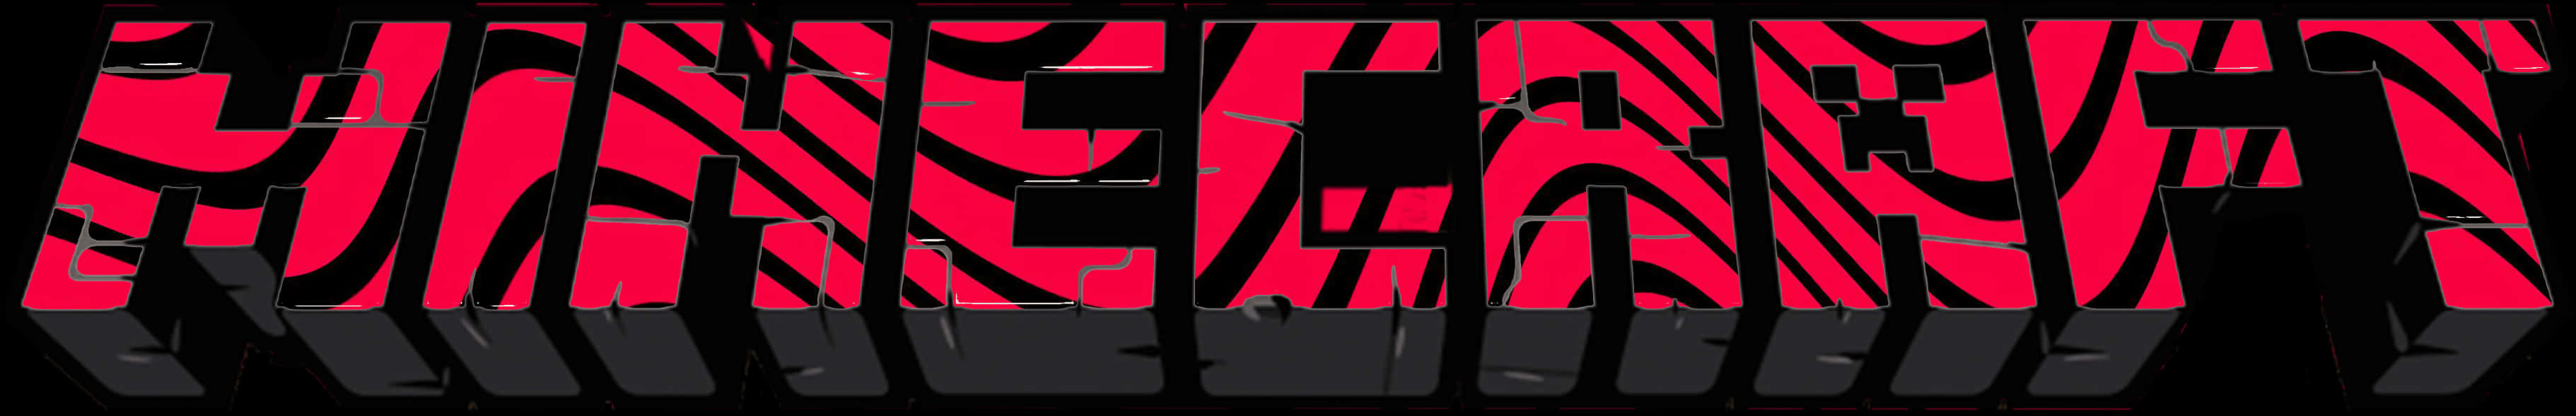 Minecraft Logo Distorted Red Black